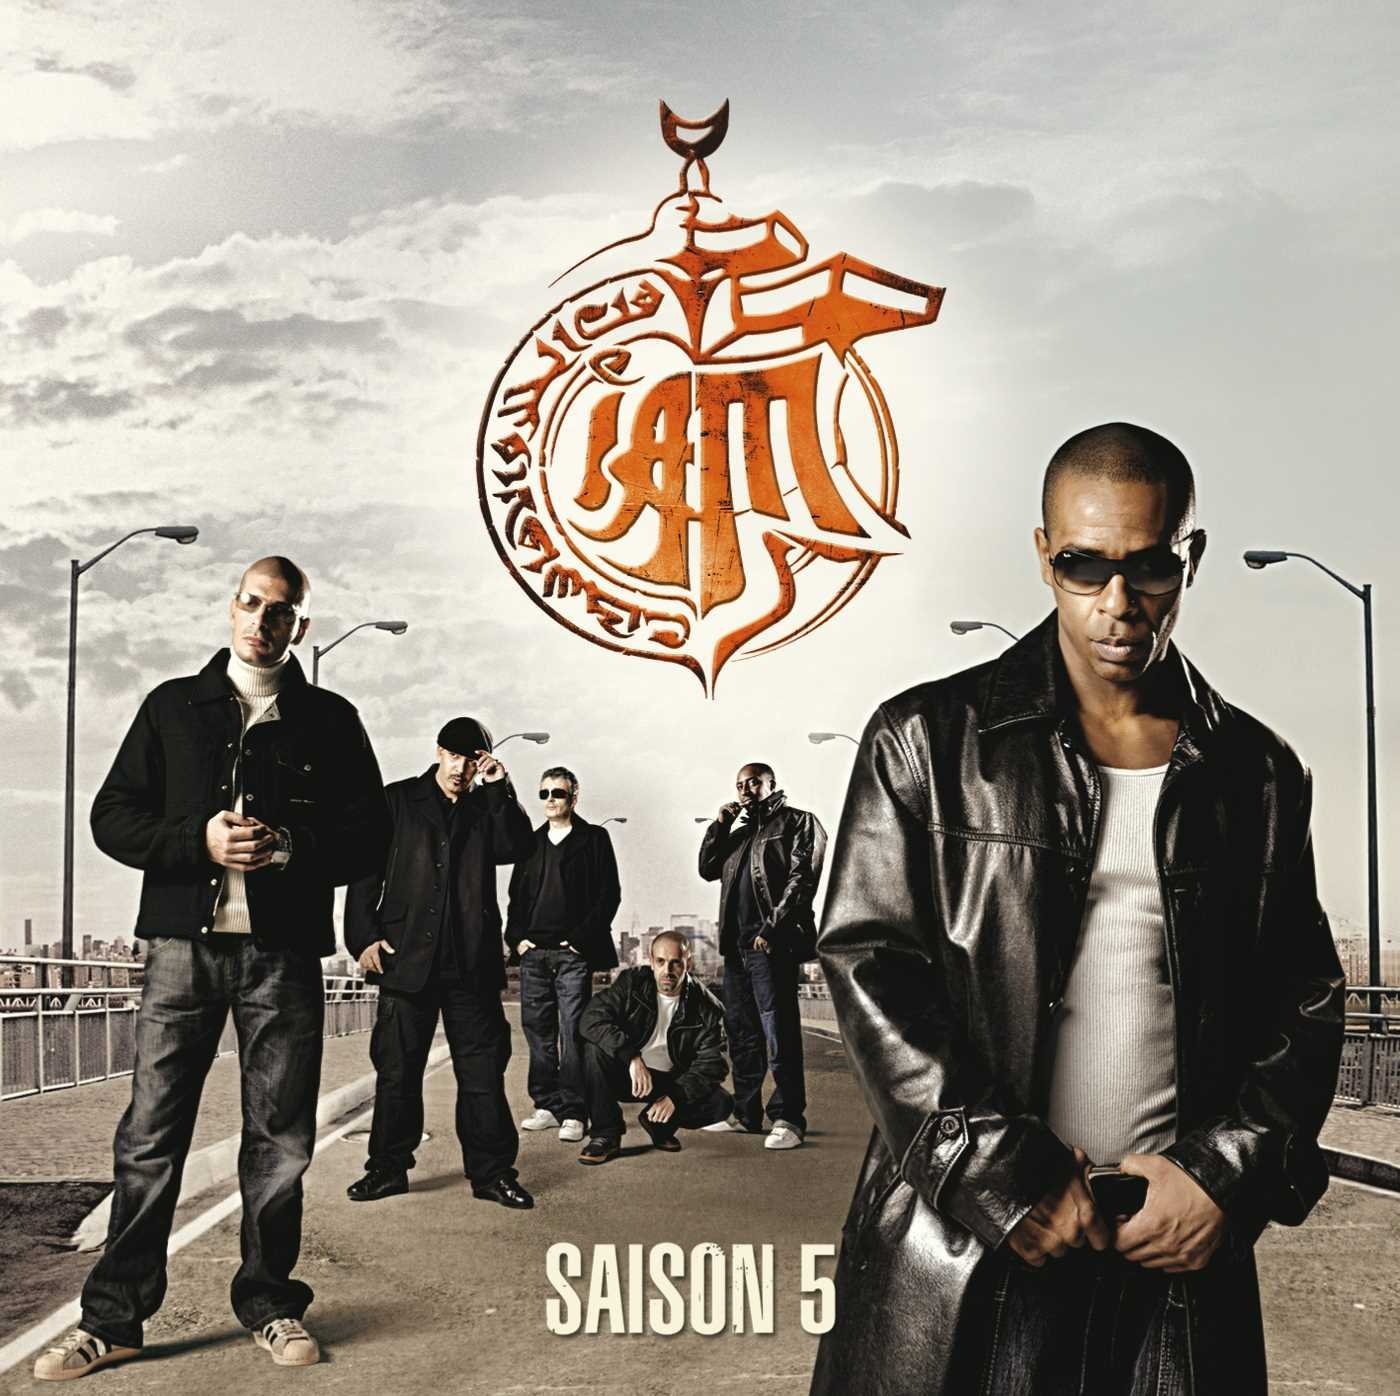 Album Cd "Iam - Saison 5" de iam sur Scredboutique.com